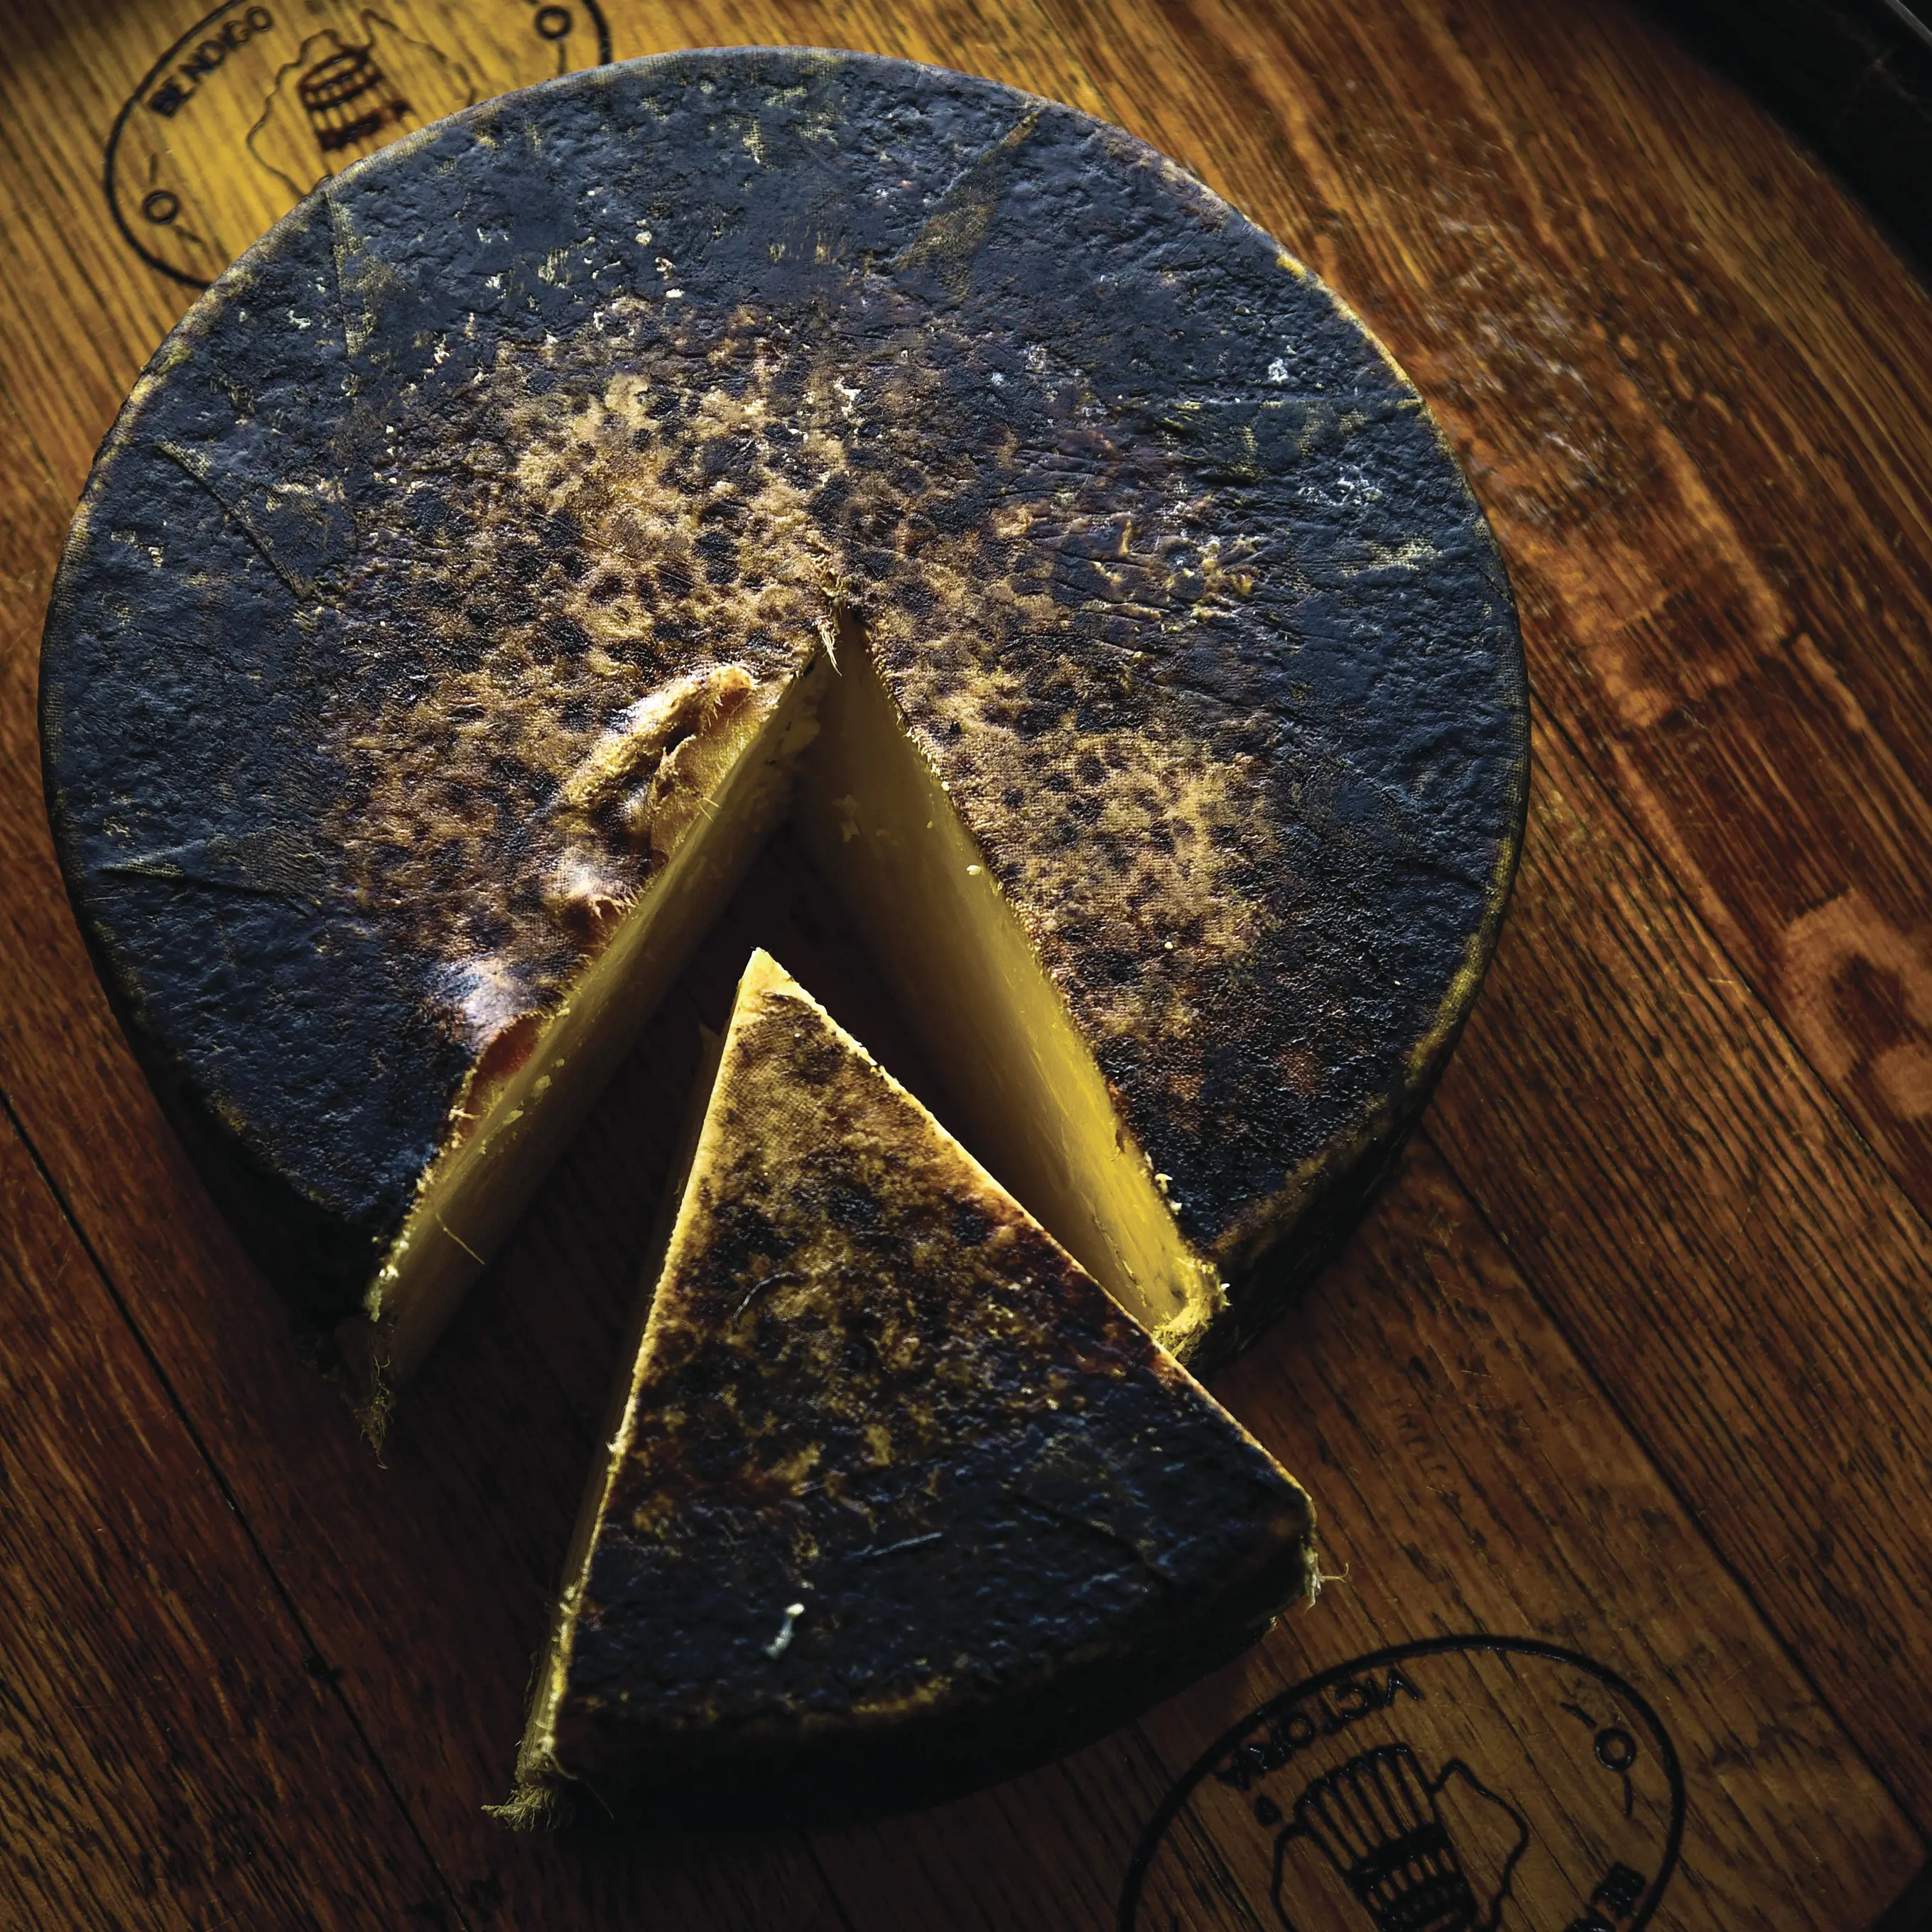 Ashgrove Cheese